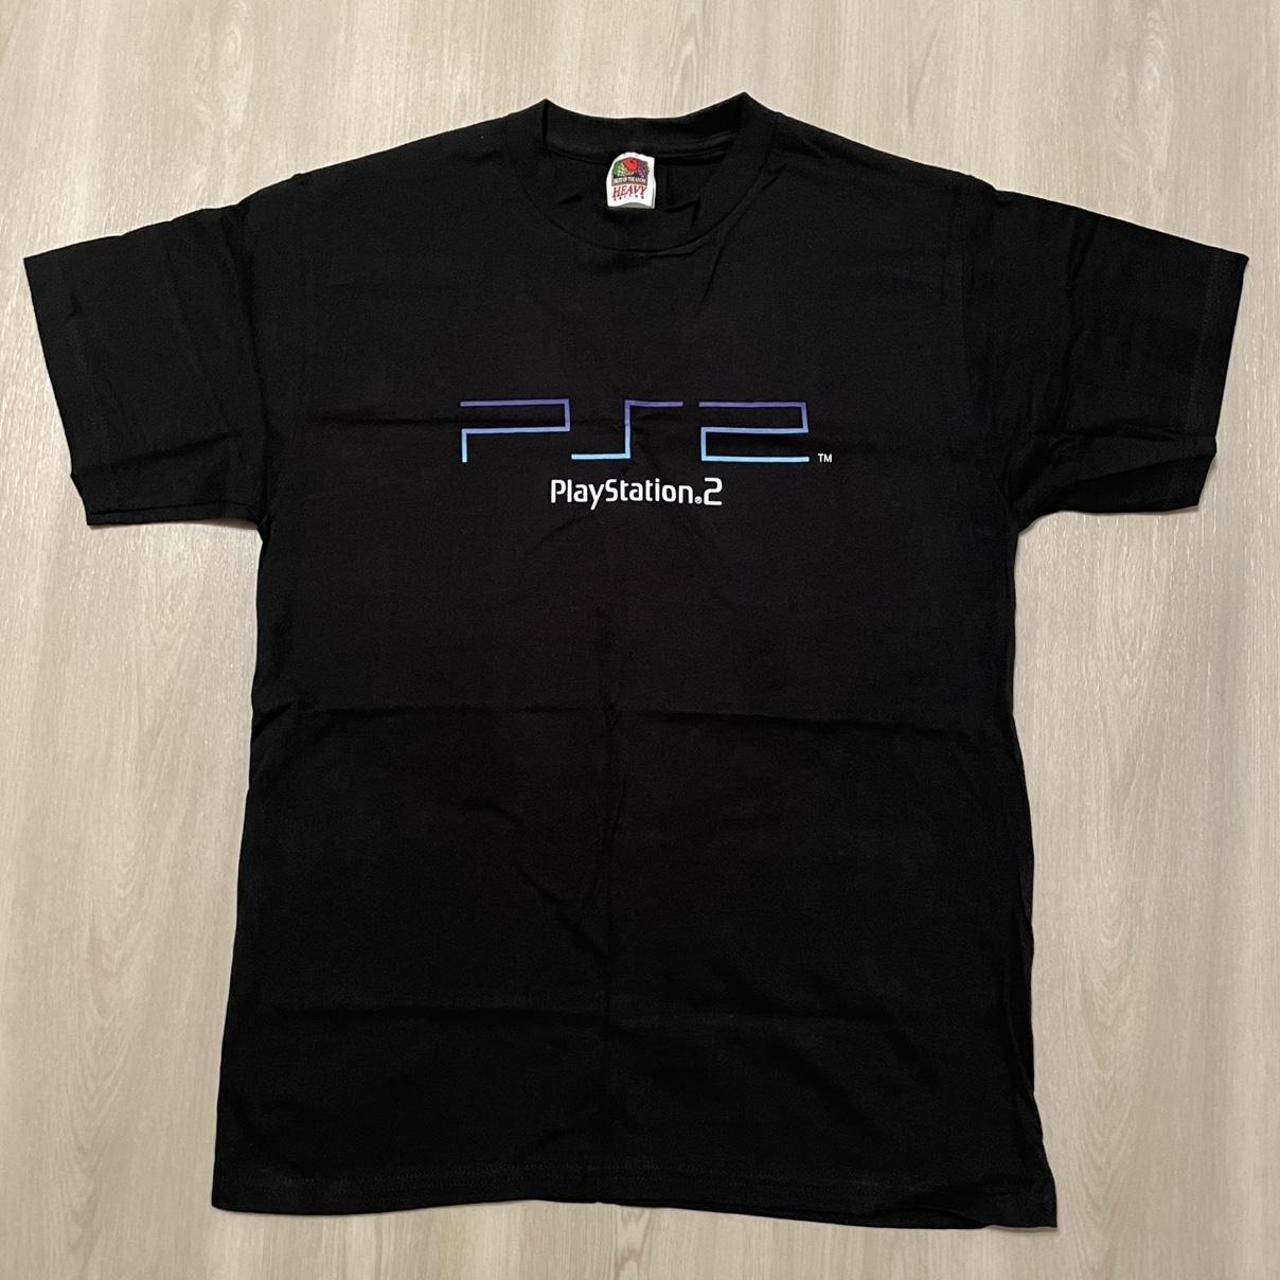 New Deadstock vintage PlayStation 2 promo shirt Mens... - Depop